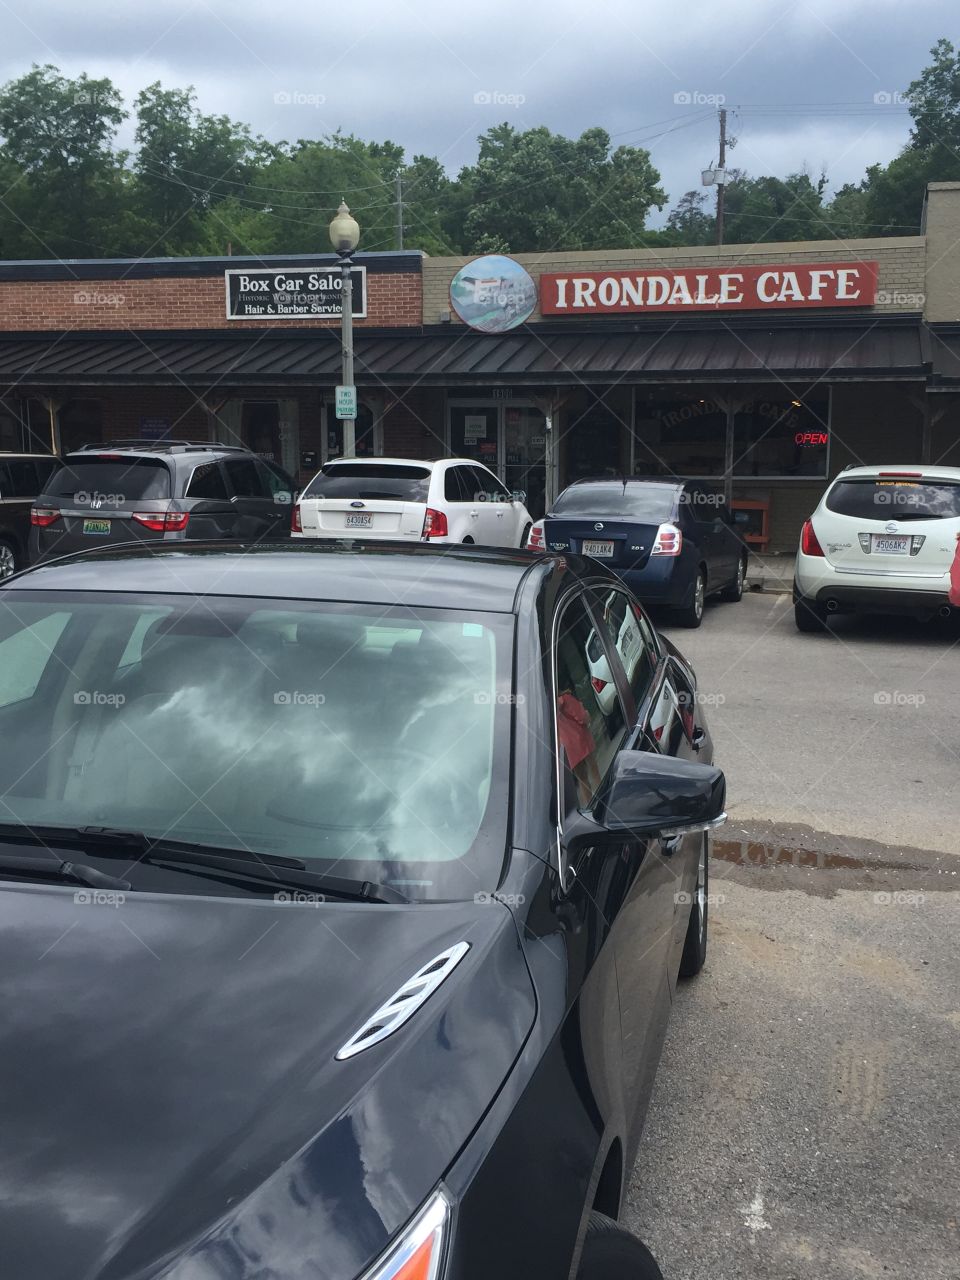 Irondale Cafe